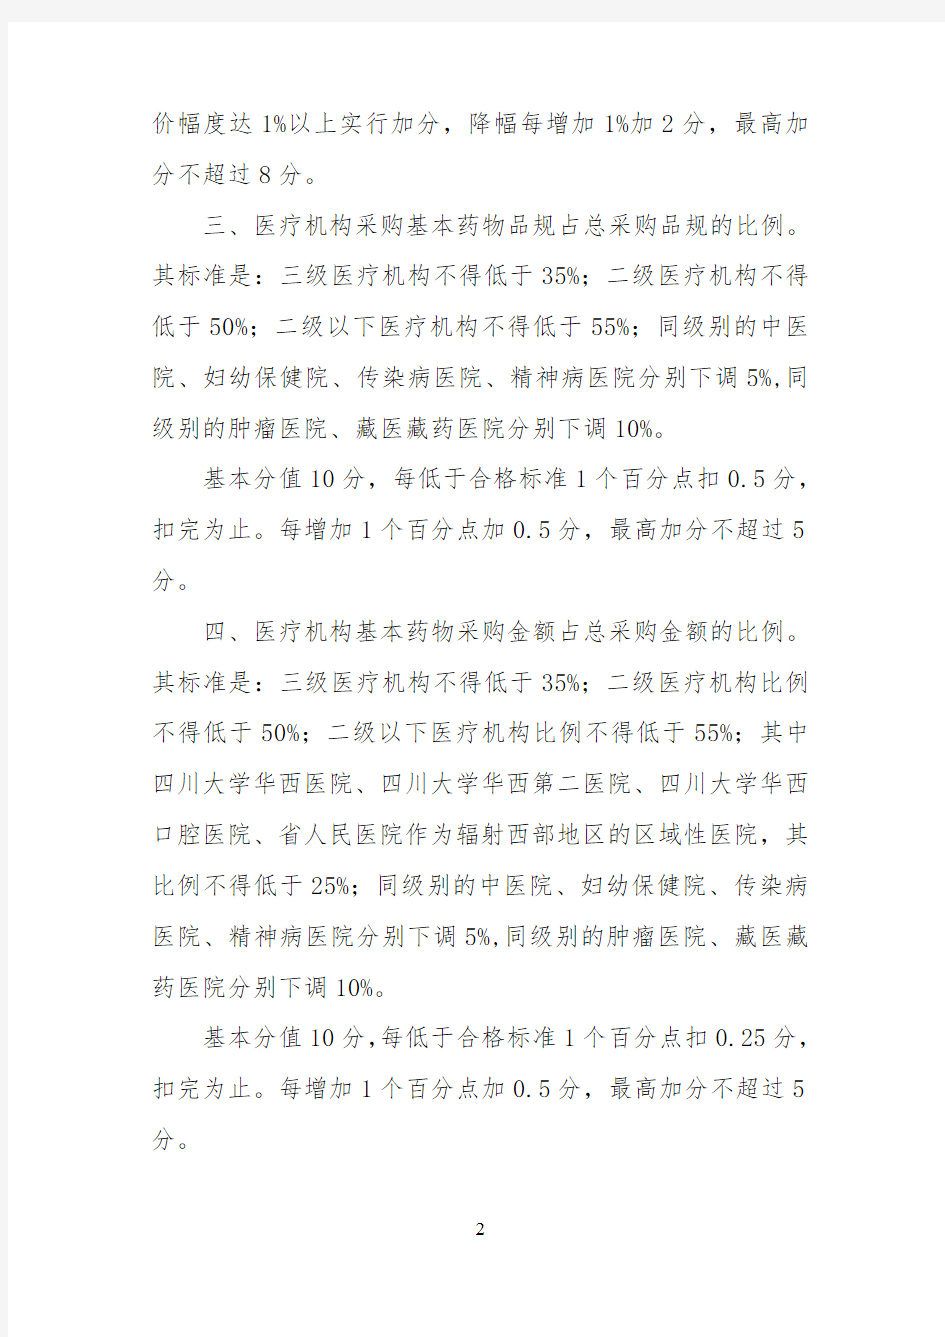 四川省医疗机构药品阳光采购管理暂行办法实施细则2013年版